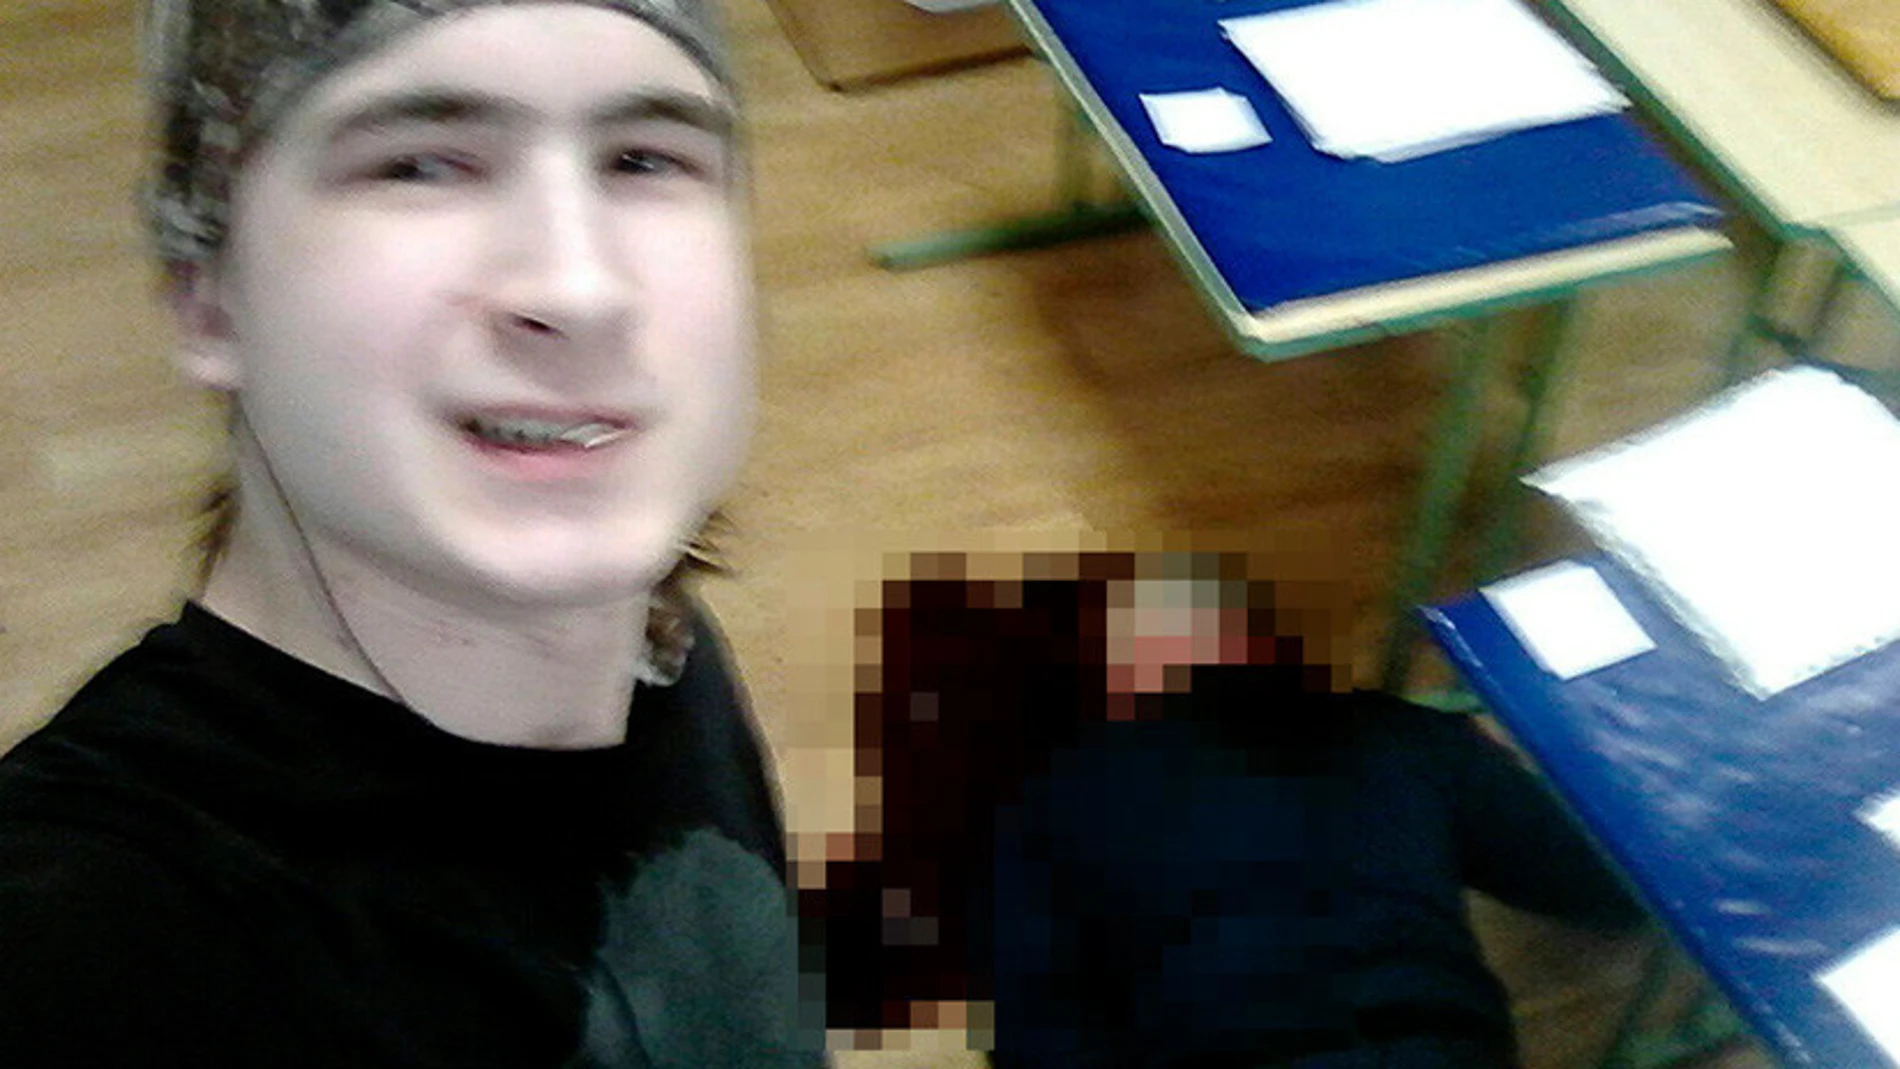 Fotografía tomada por el joven junto al cadáver del profesor asesinado